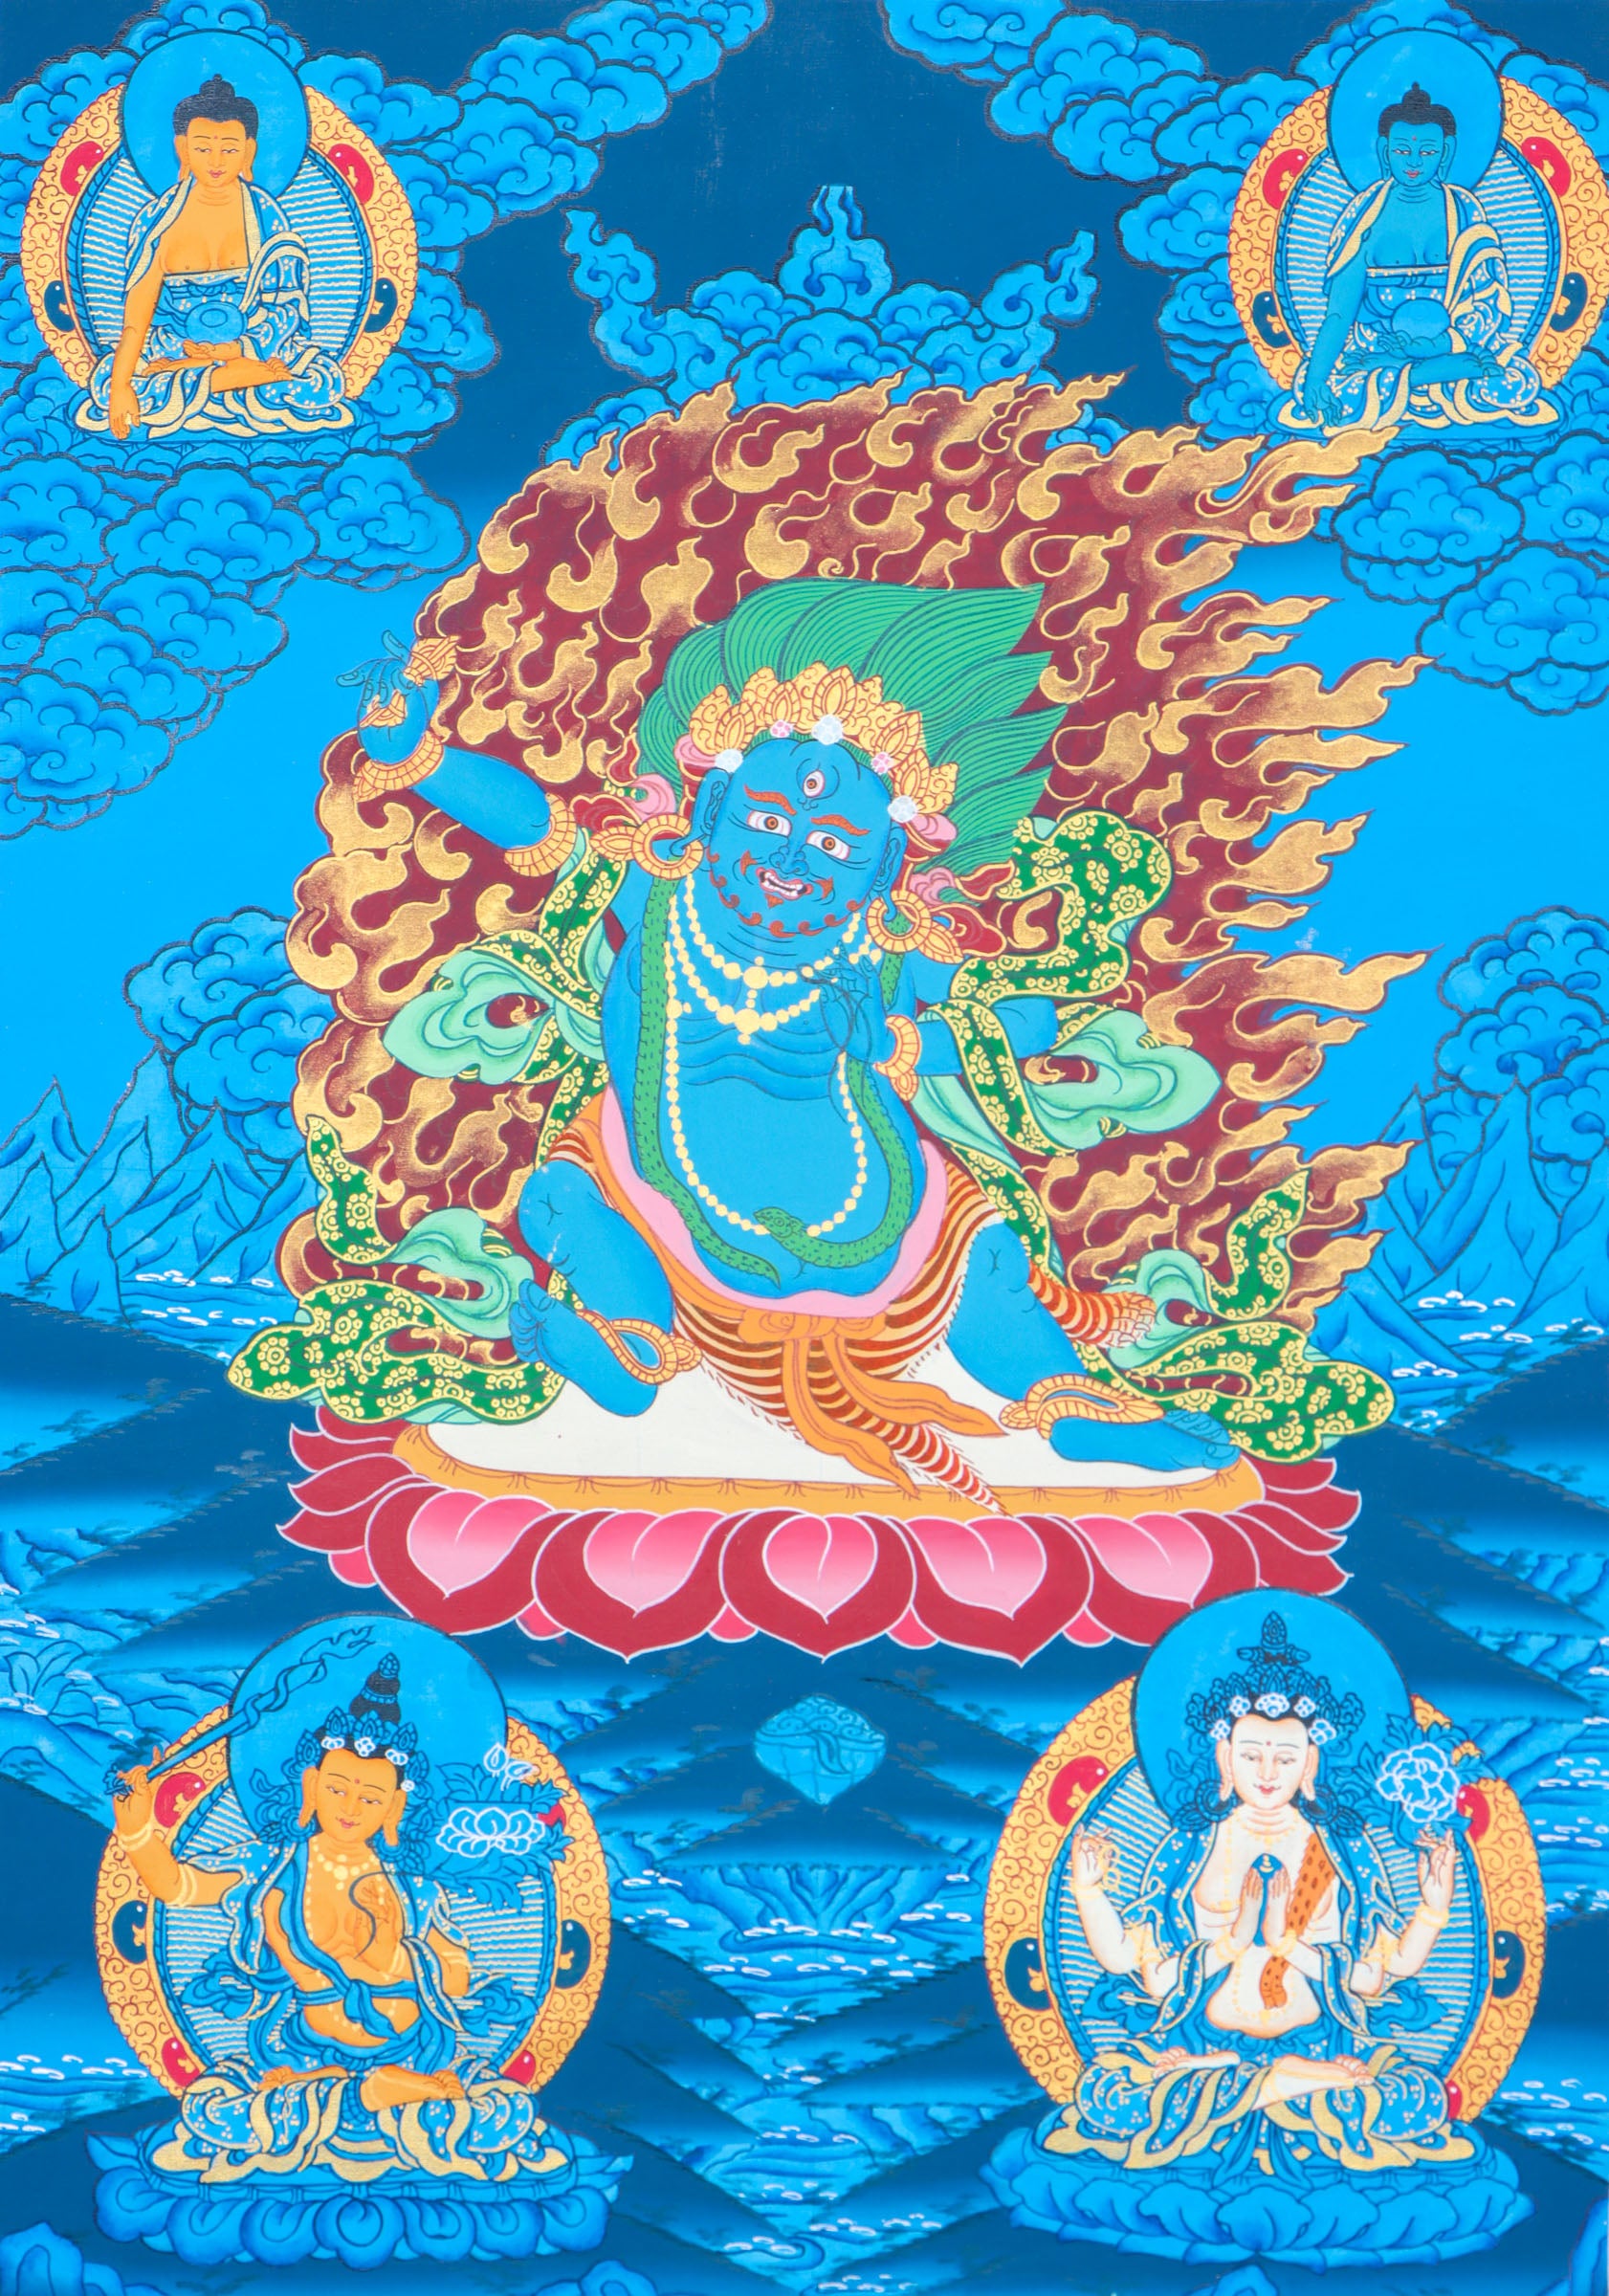 Vajrapani Thangka for spiritual power and protection.